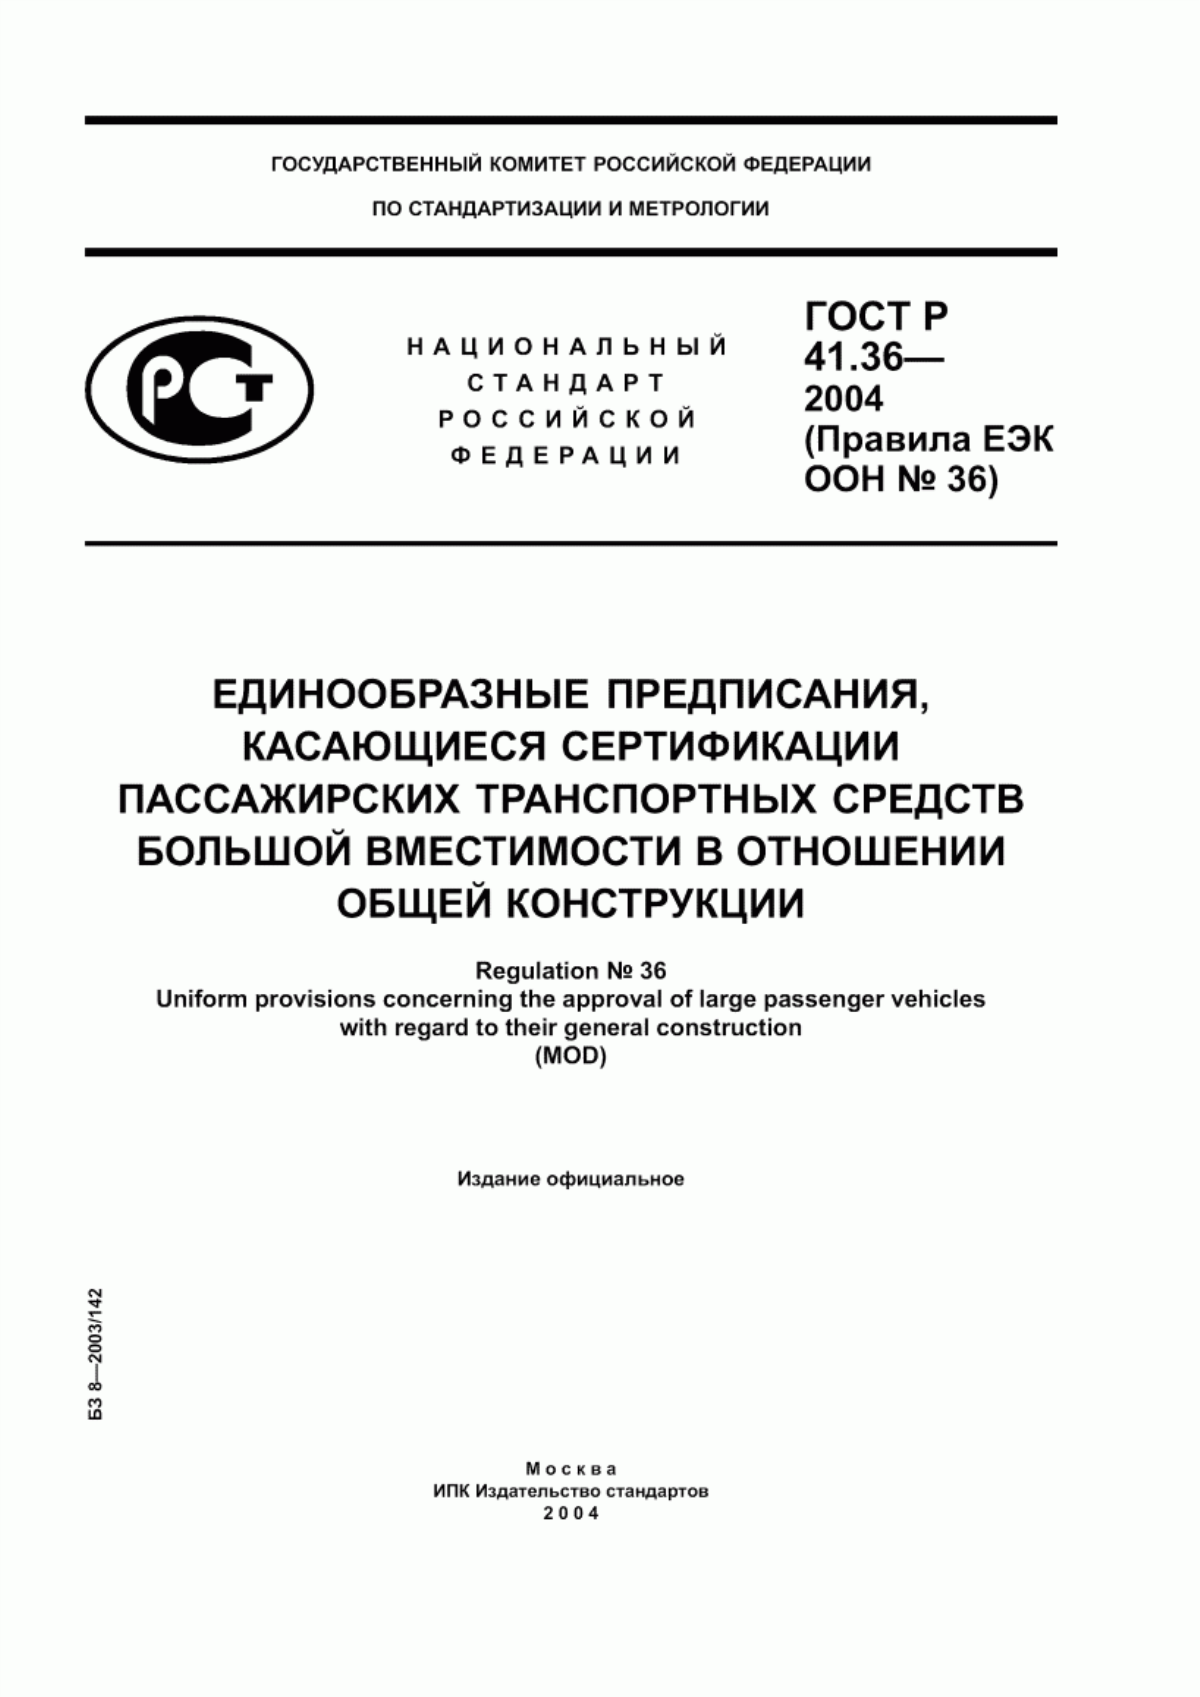 ГОСТ Р 41.36-2004 Единообразные предписания, касающиеся сертификации пассажирских транспортных средств большой вместимости в отношении общей конструкции